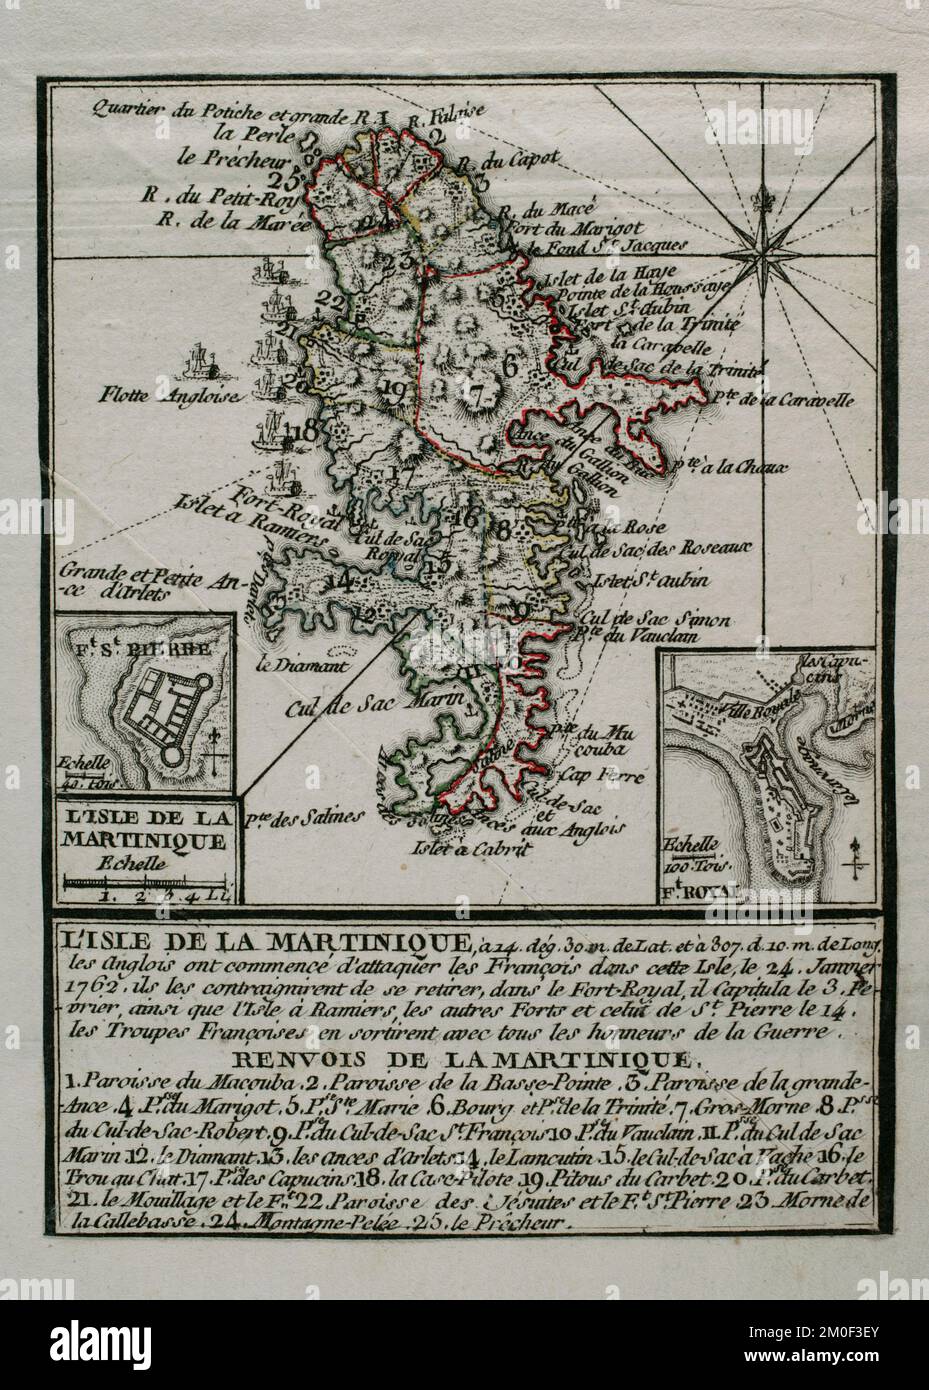 Martinica, 1762. Isola catturata dagli inglesi dai francesi durante la Guerra dei sette anni (1756-1763), rimanendo in loro possesso dal 1762 al 1763. Gli inglesi iniziarono ad attaccare i francesi sull'isola il 24 gennaio 1762, costringendoli a ritirarsi nella capitale, Fort-Royal. I francesi capitolarono il 3 febbraio. Il 12 febbraio l'intera isola era sotto il controllo britannico. Mappa pubblicata nel 1765 dal cartografo Jean de Beaurain (1696-1771) come illustrazione della sua Grande carta della Germania, con gli eventi che si sono verificati durante la Guerra dei sette anni. Esercito alleato in rosso e l'esercito francese in bl Foto Stock